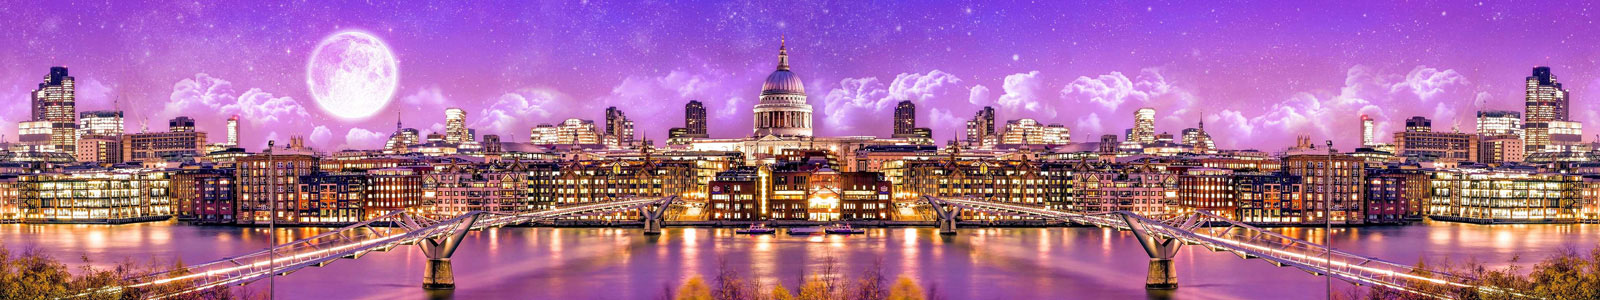 №5994 - Панорама Лондона лунной ночью